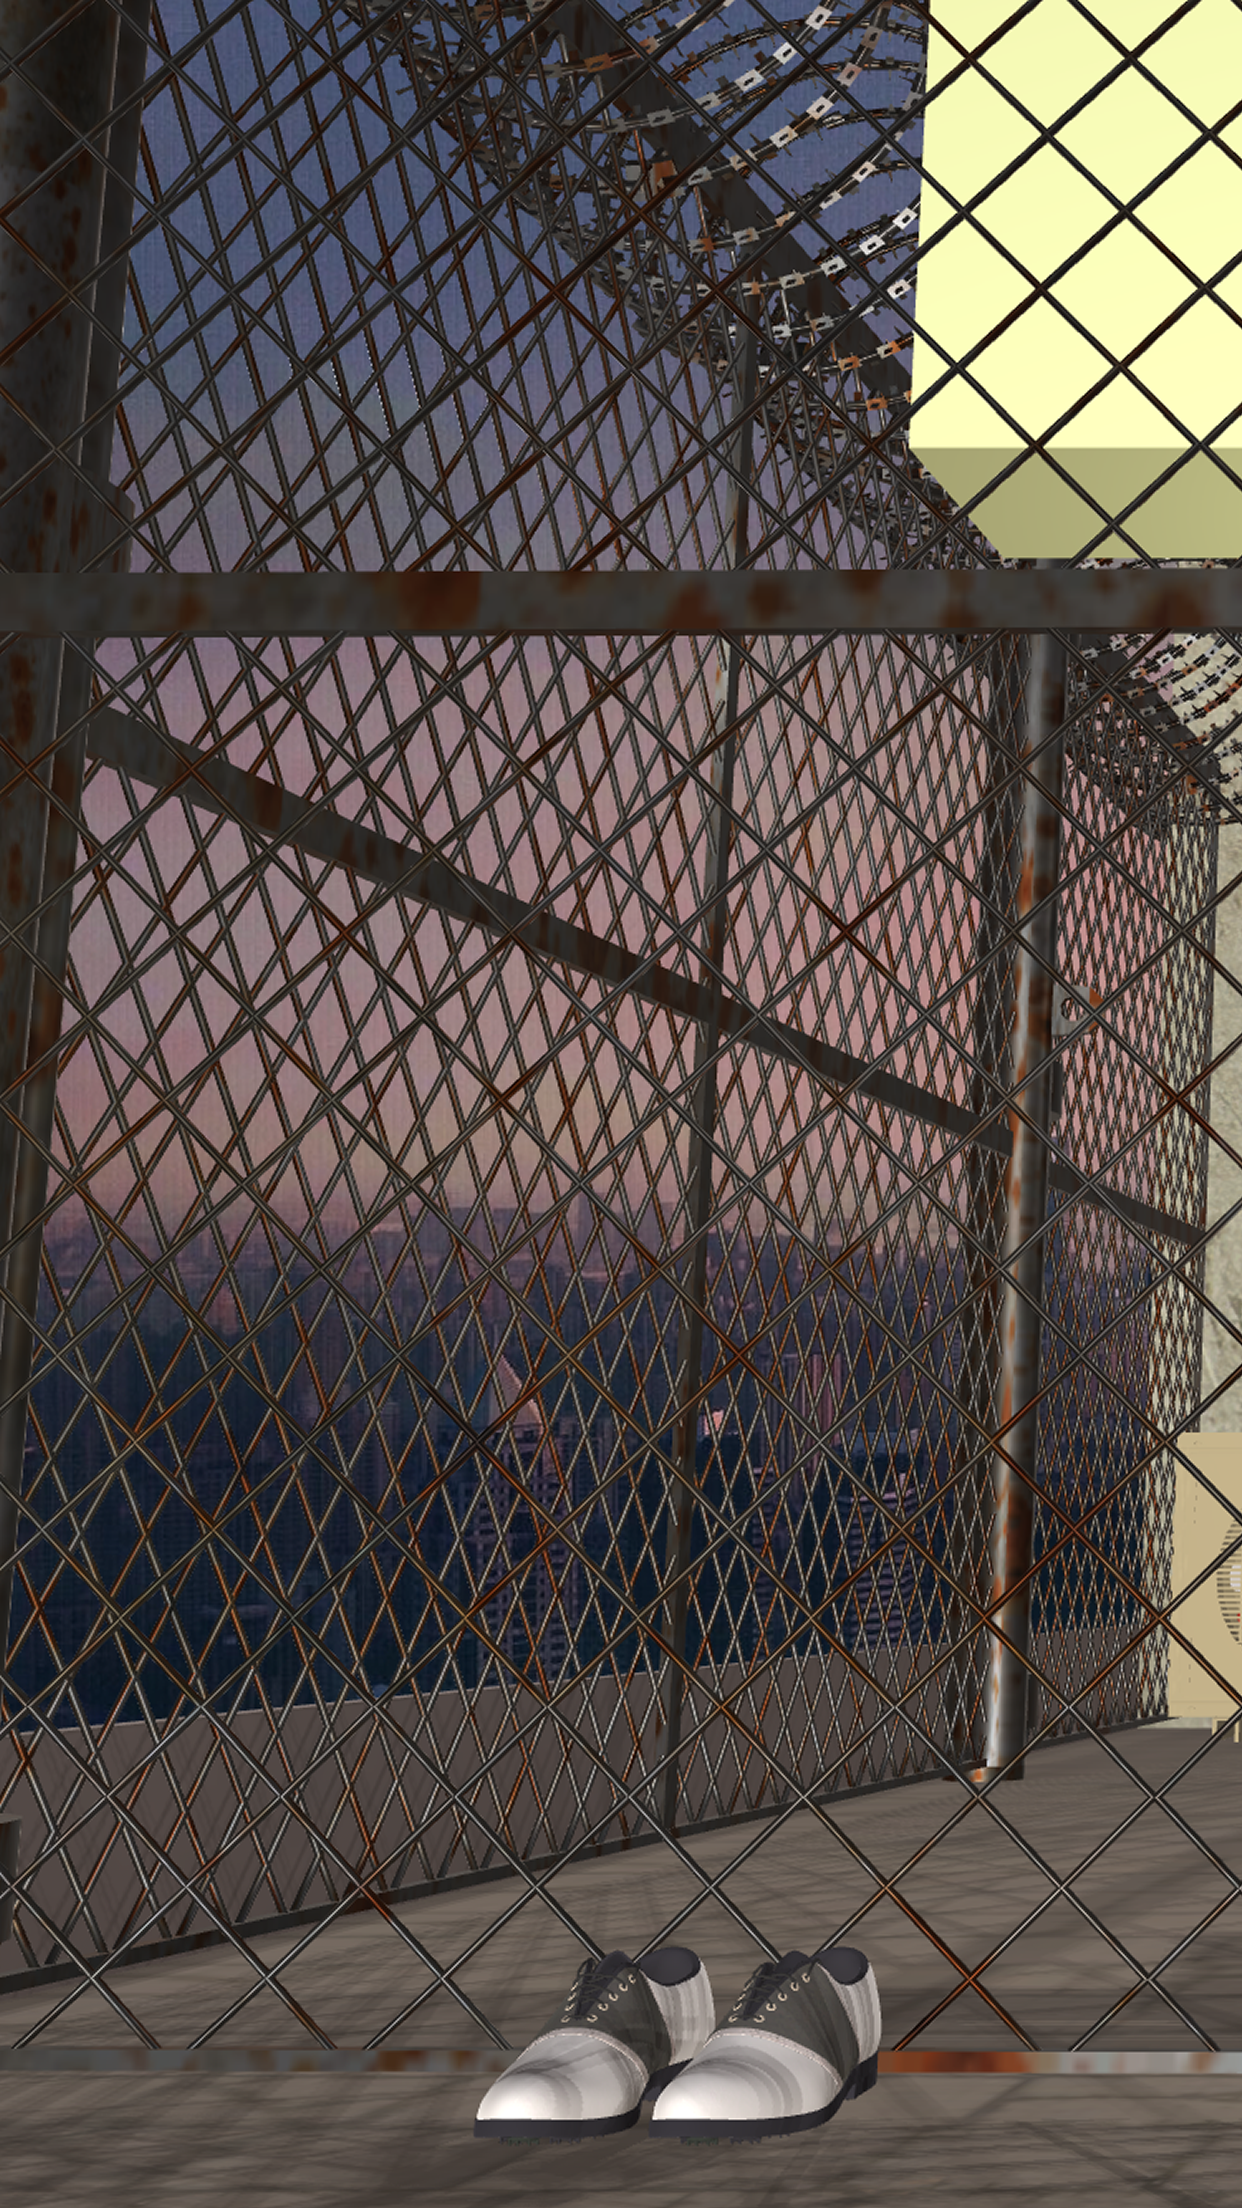 Screenshot 1 of Escape Game - Menara Kehidupan 1.4.3